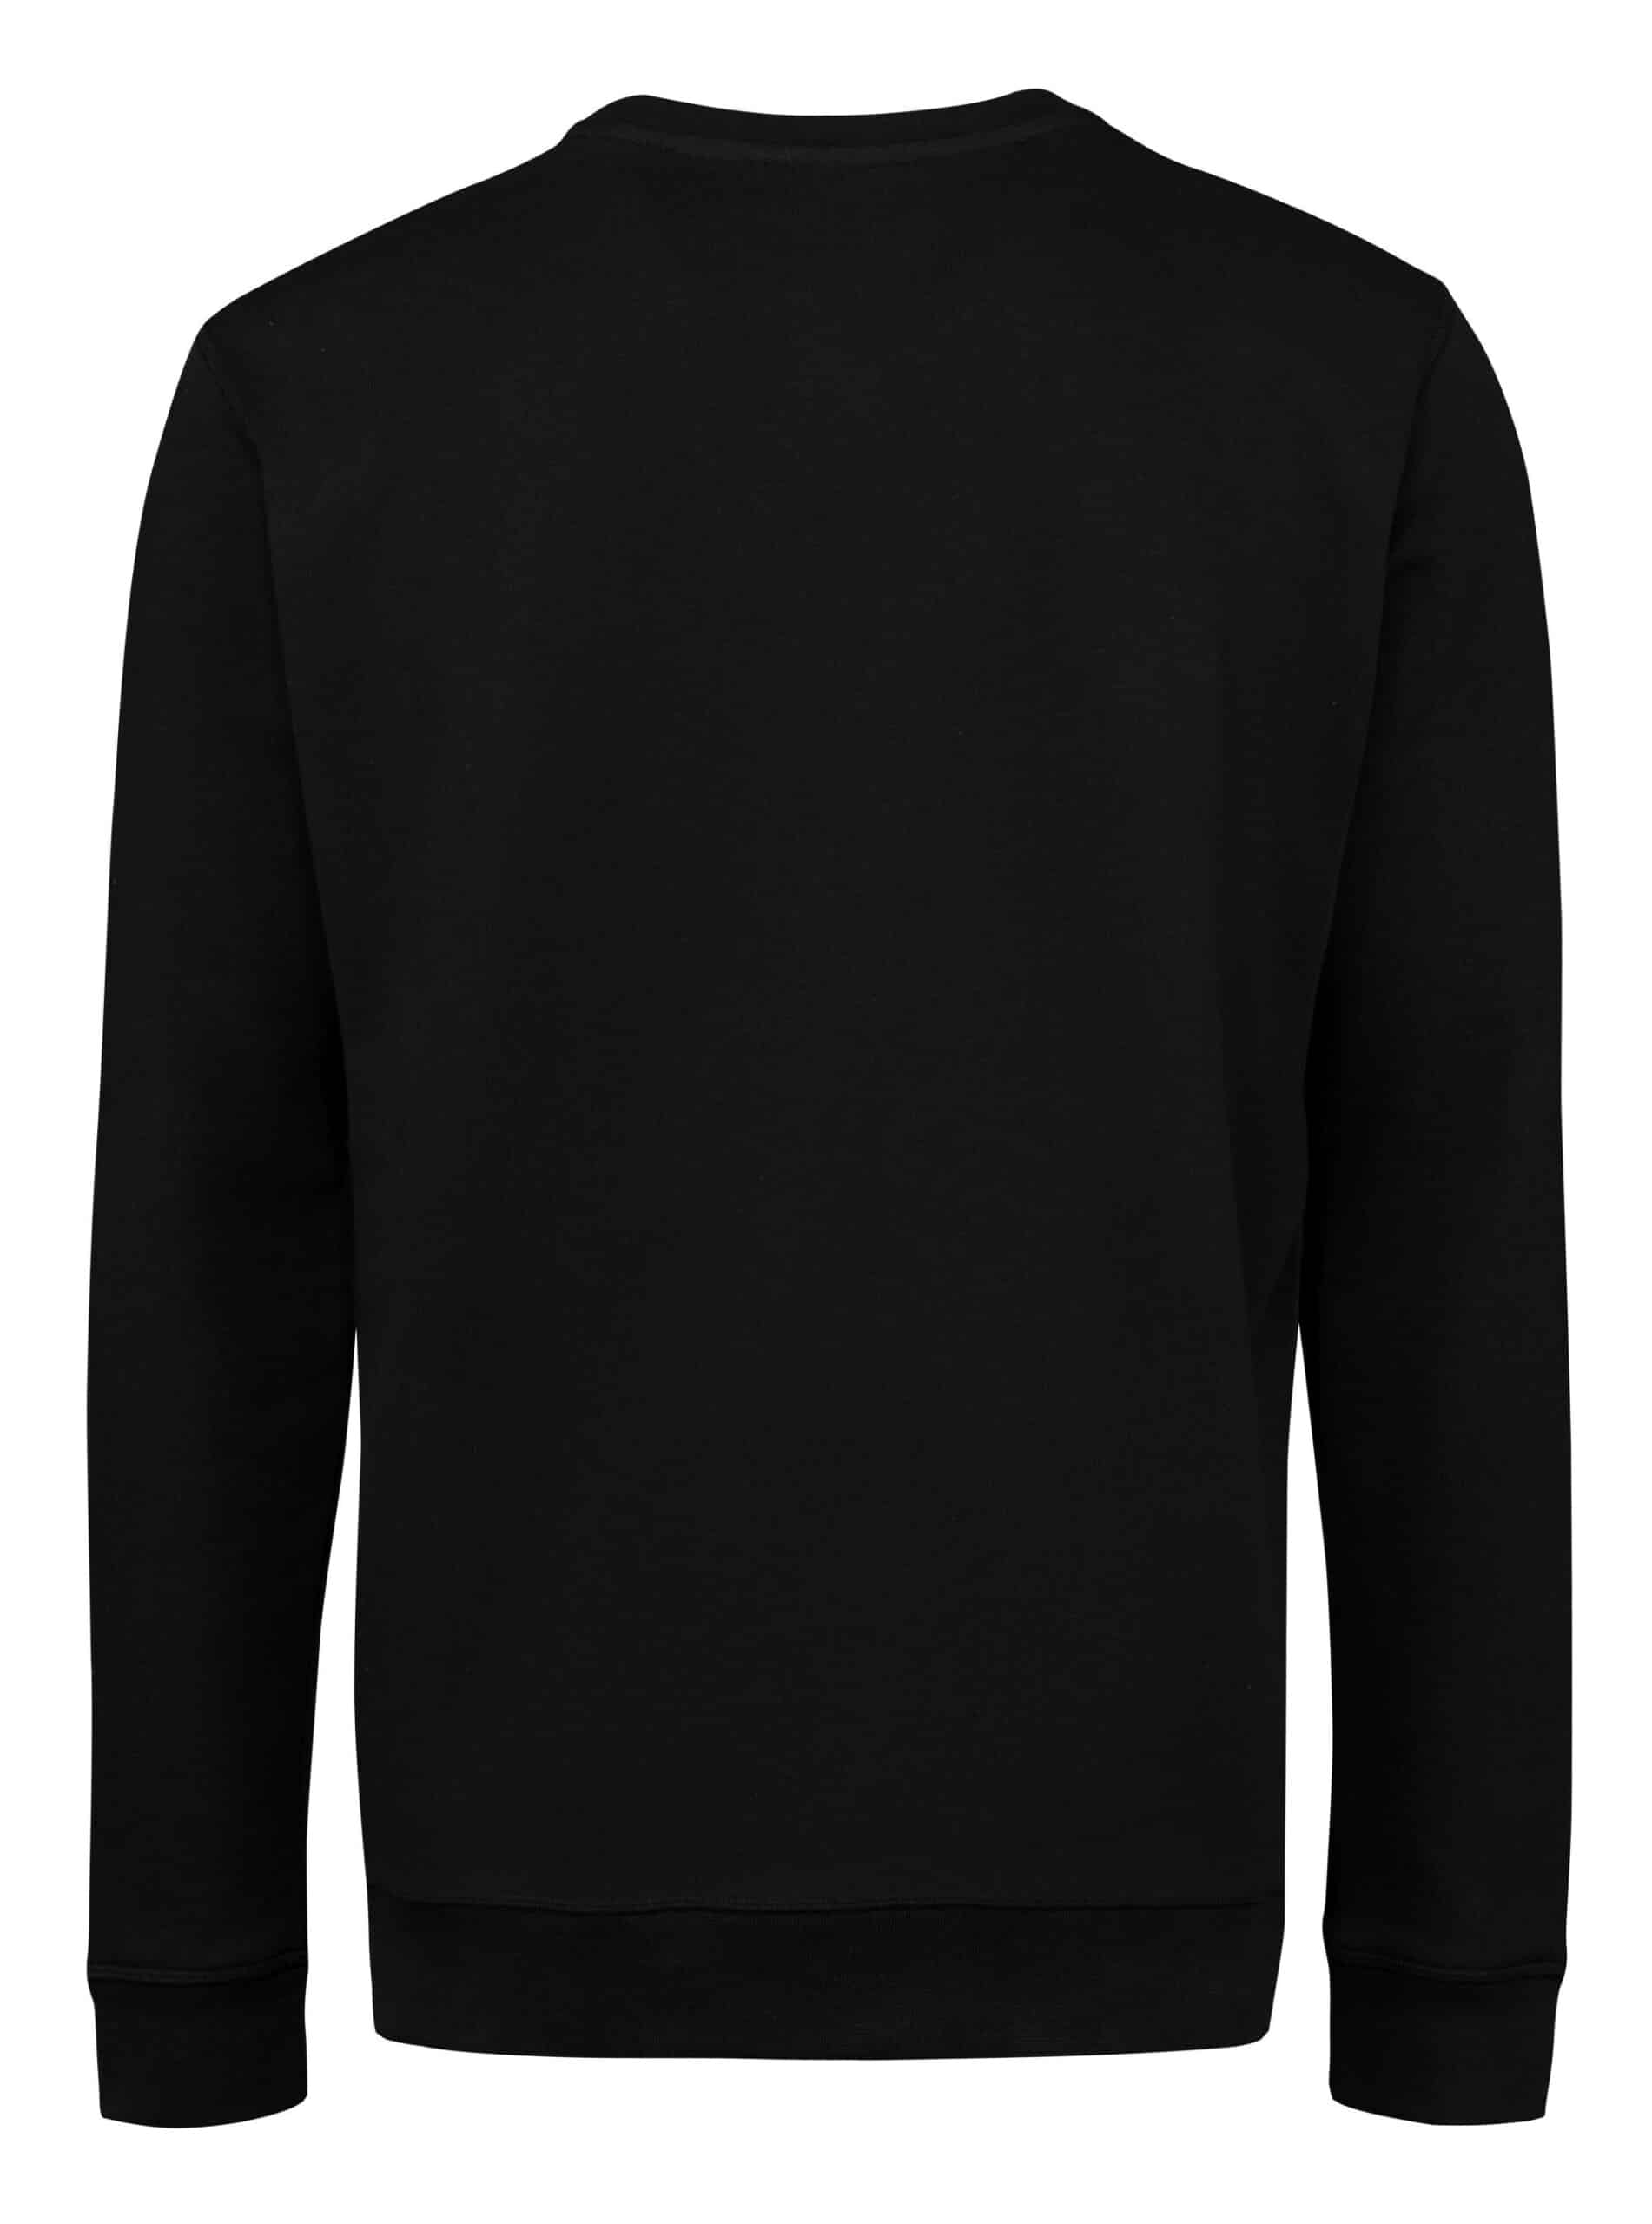 John Deere Black Sweatshirt with Logo - Tuckwells